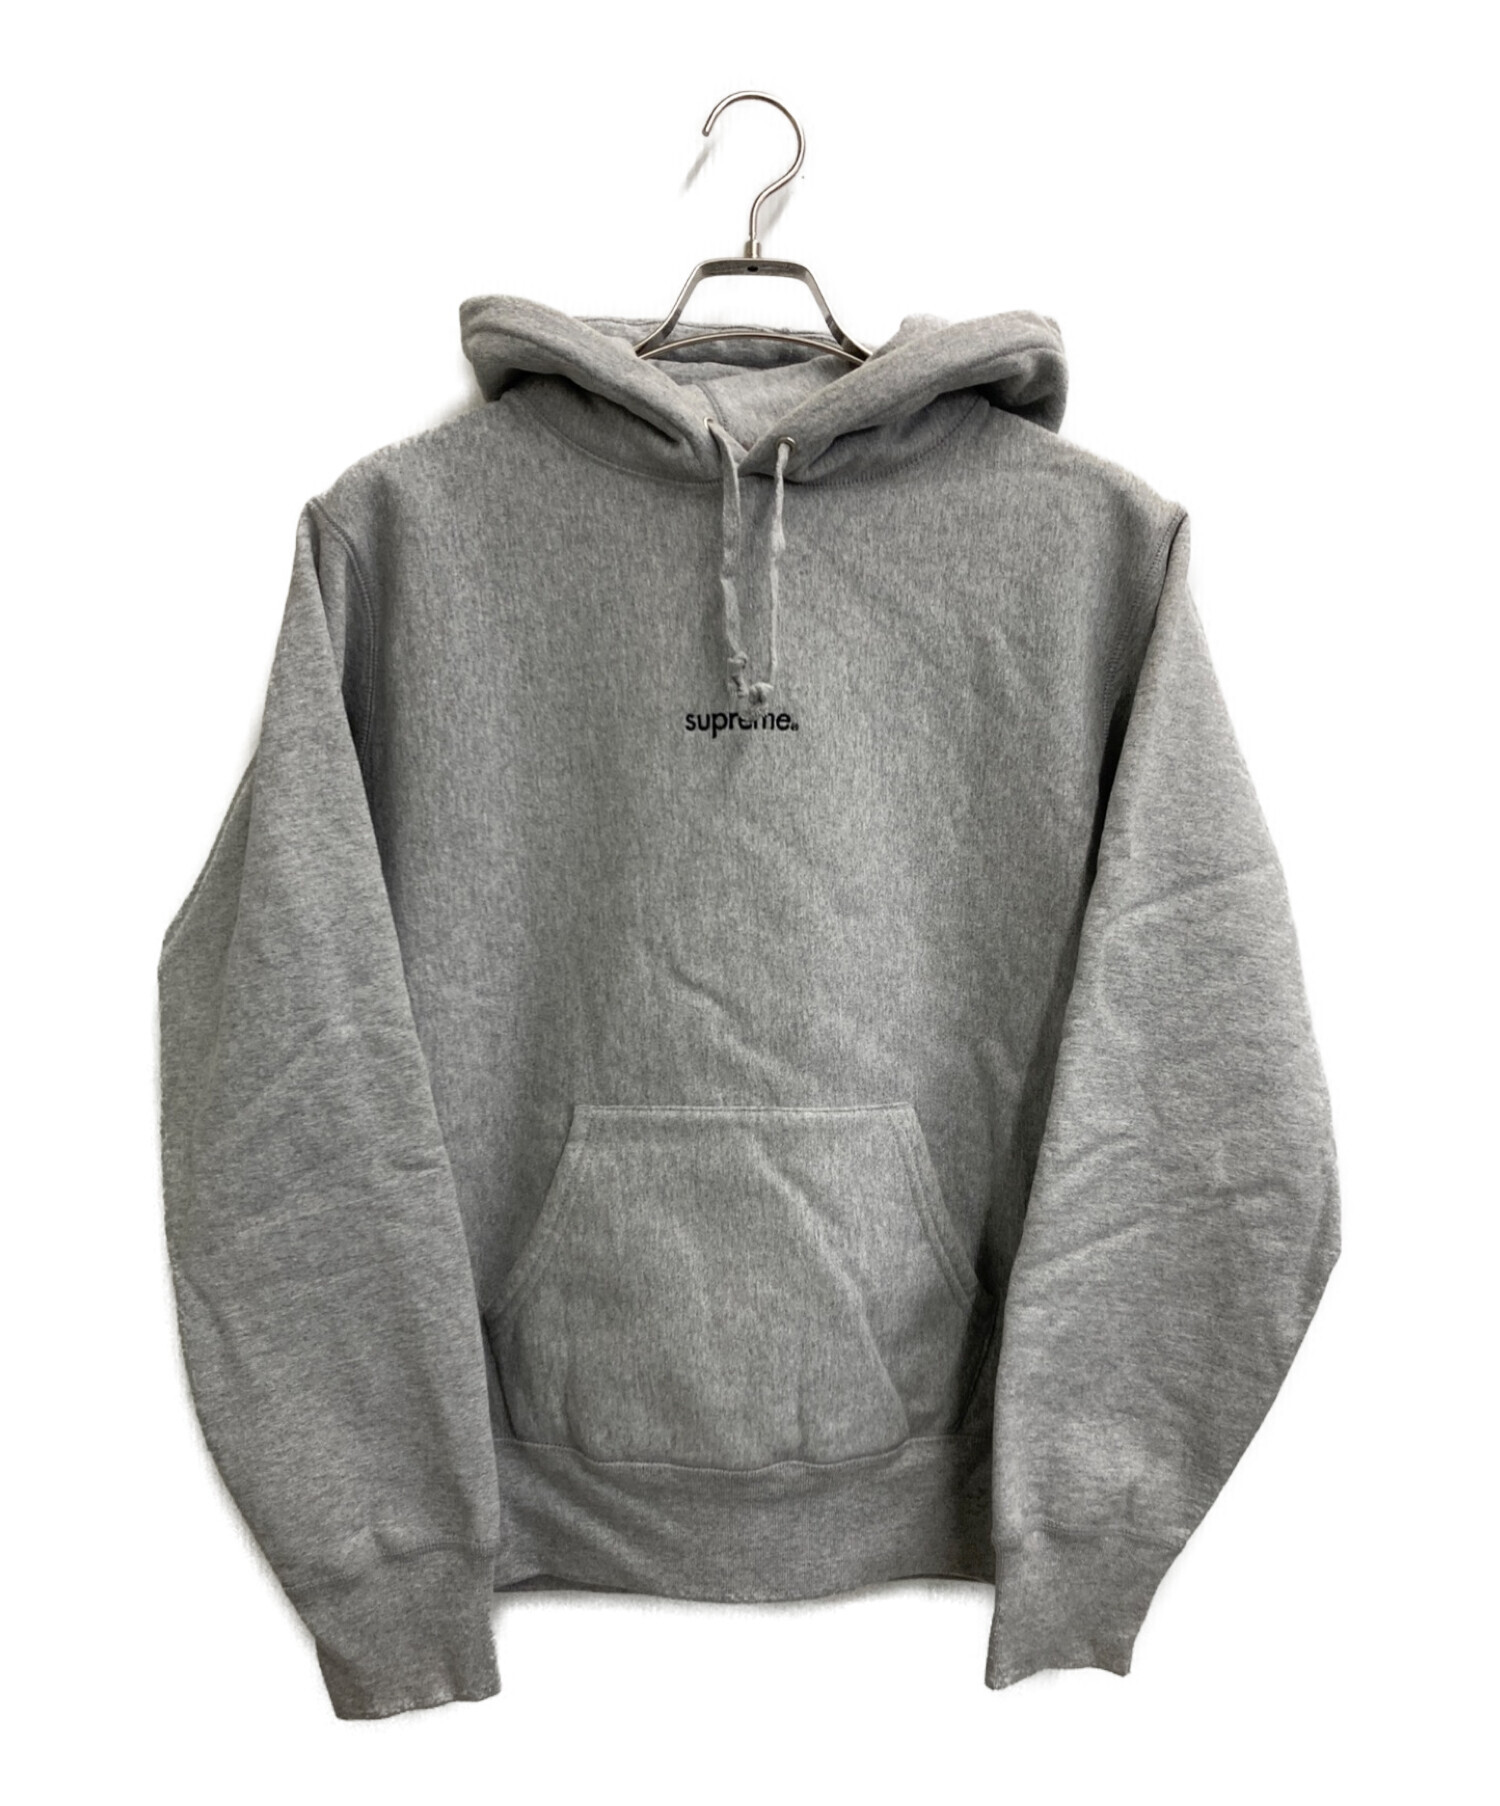 supreme Trademark Hooded Sweatshirt グレー